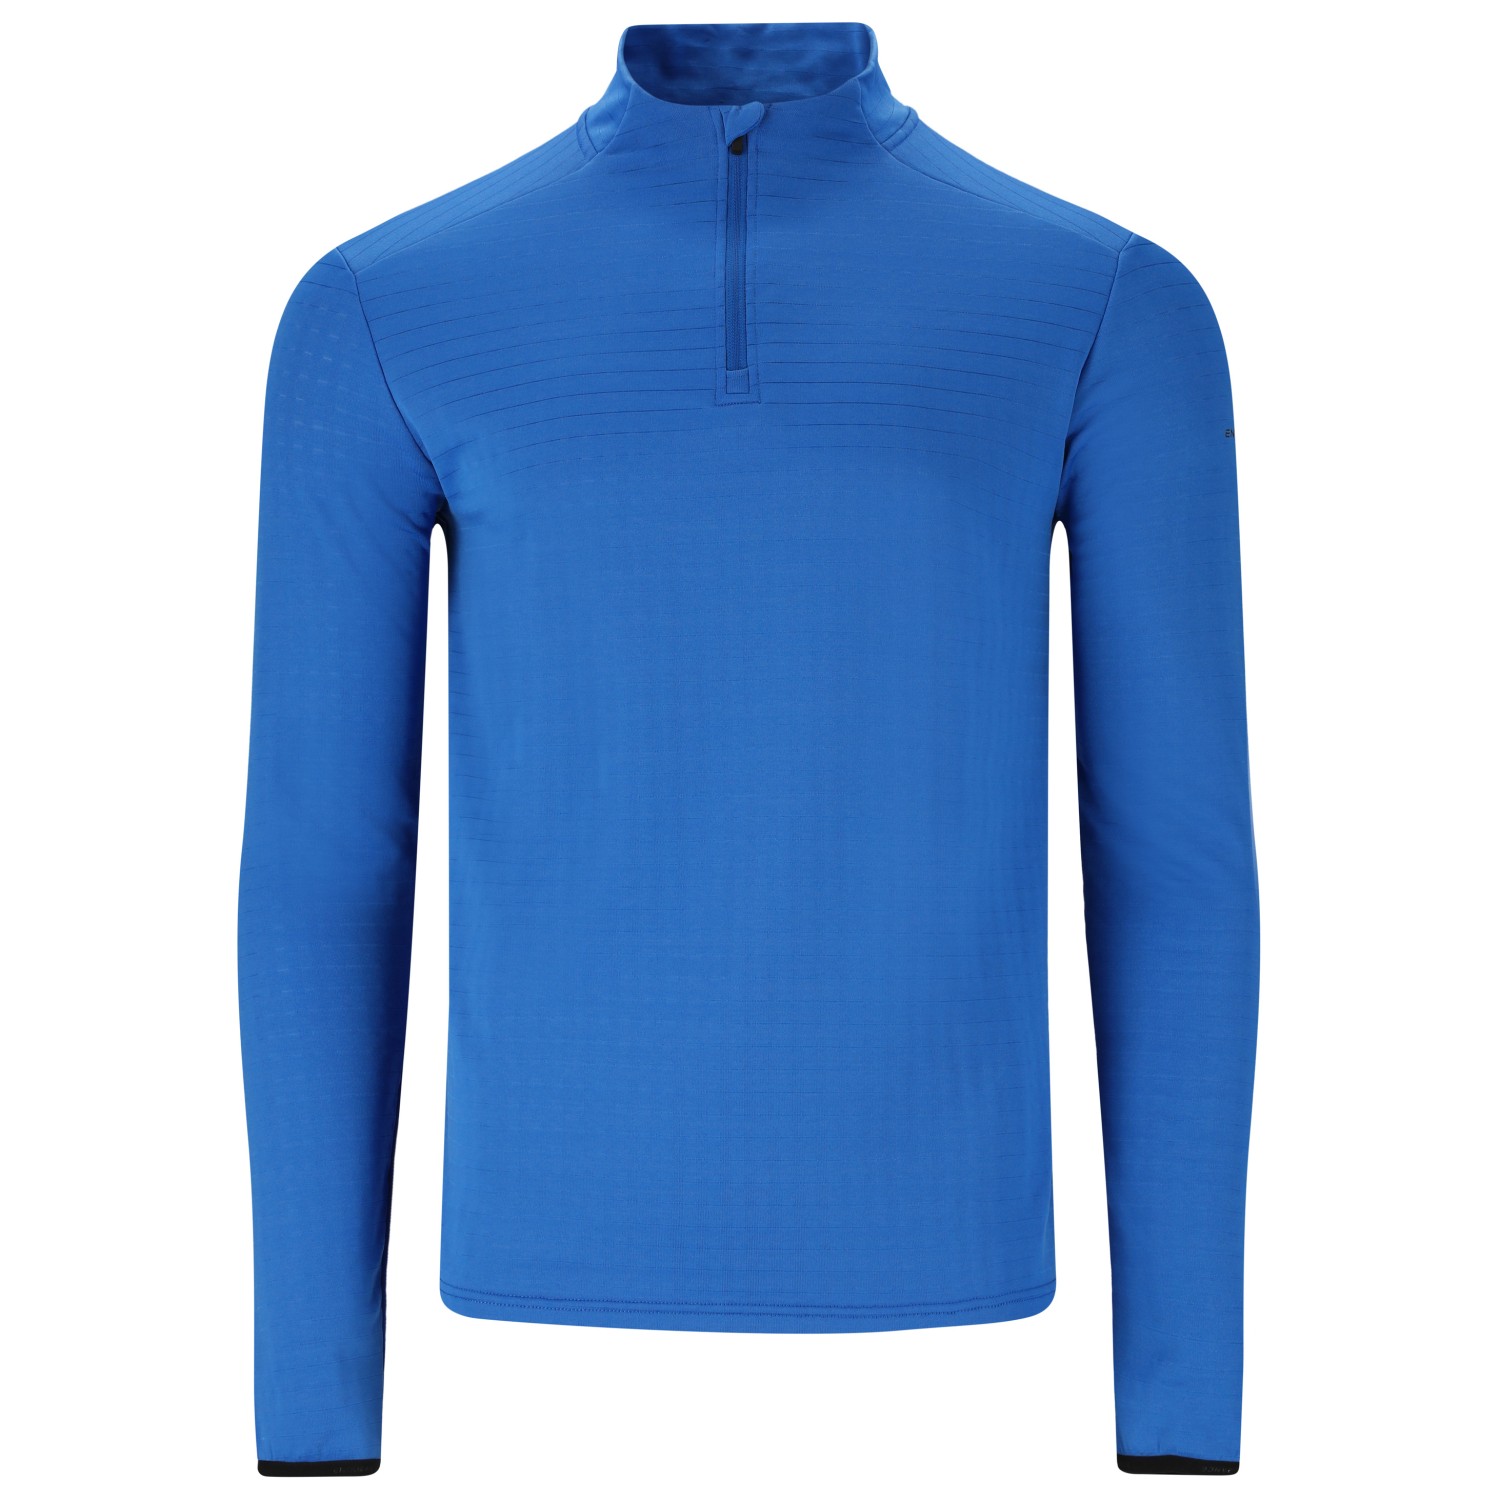 Функциональная рубашка Endurance Toko Midlayer, цвет Strong Blue